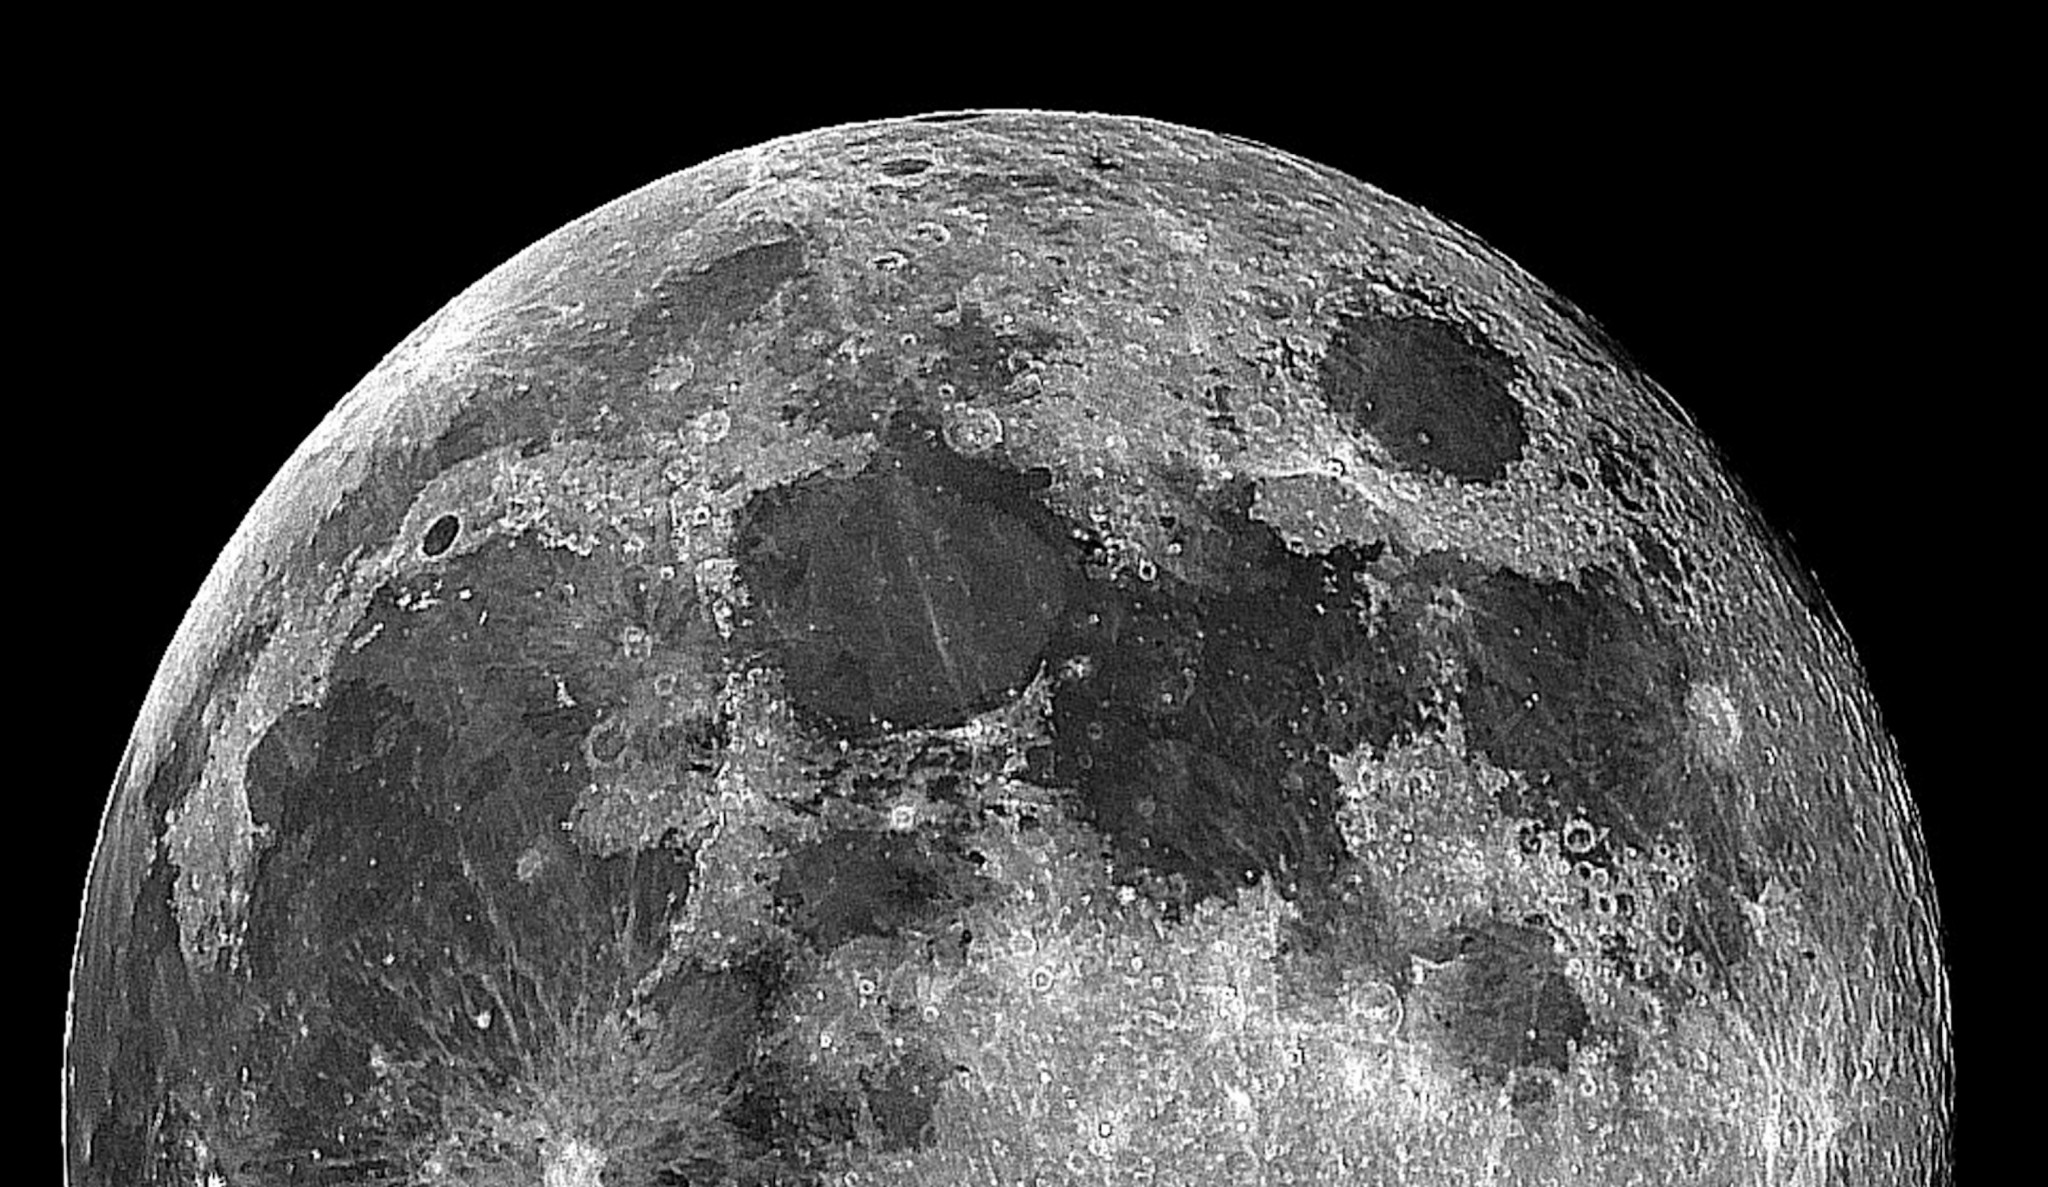 luna fondos de pantalla hd,luna,en blanco y negro,fotografía monocroma,objeto astronómico,monocromo